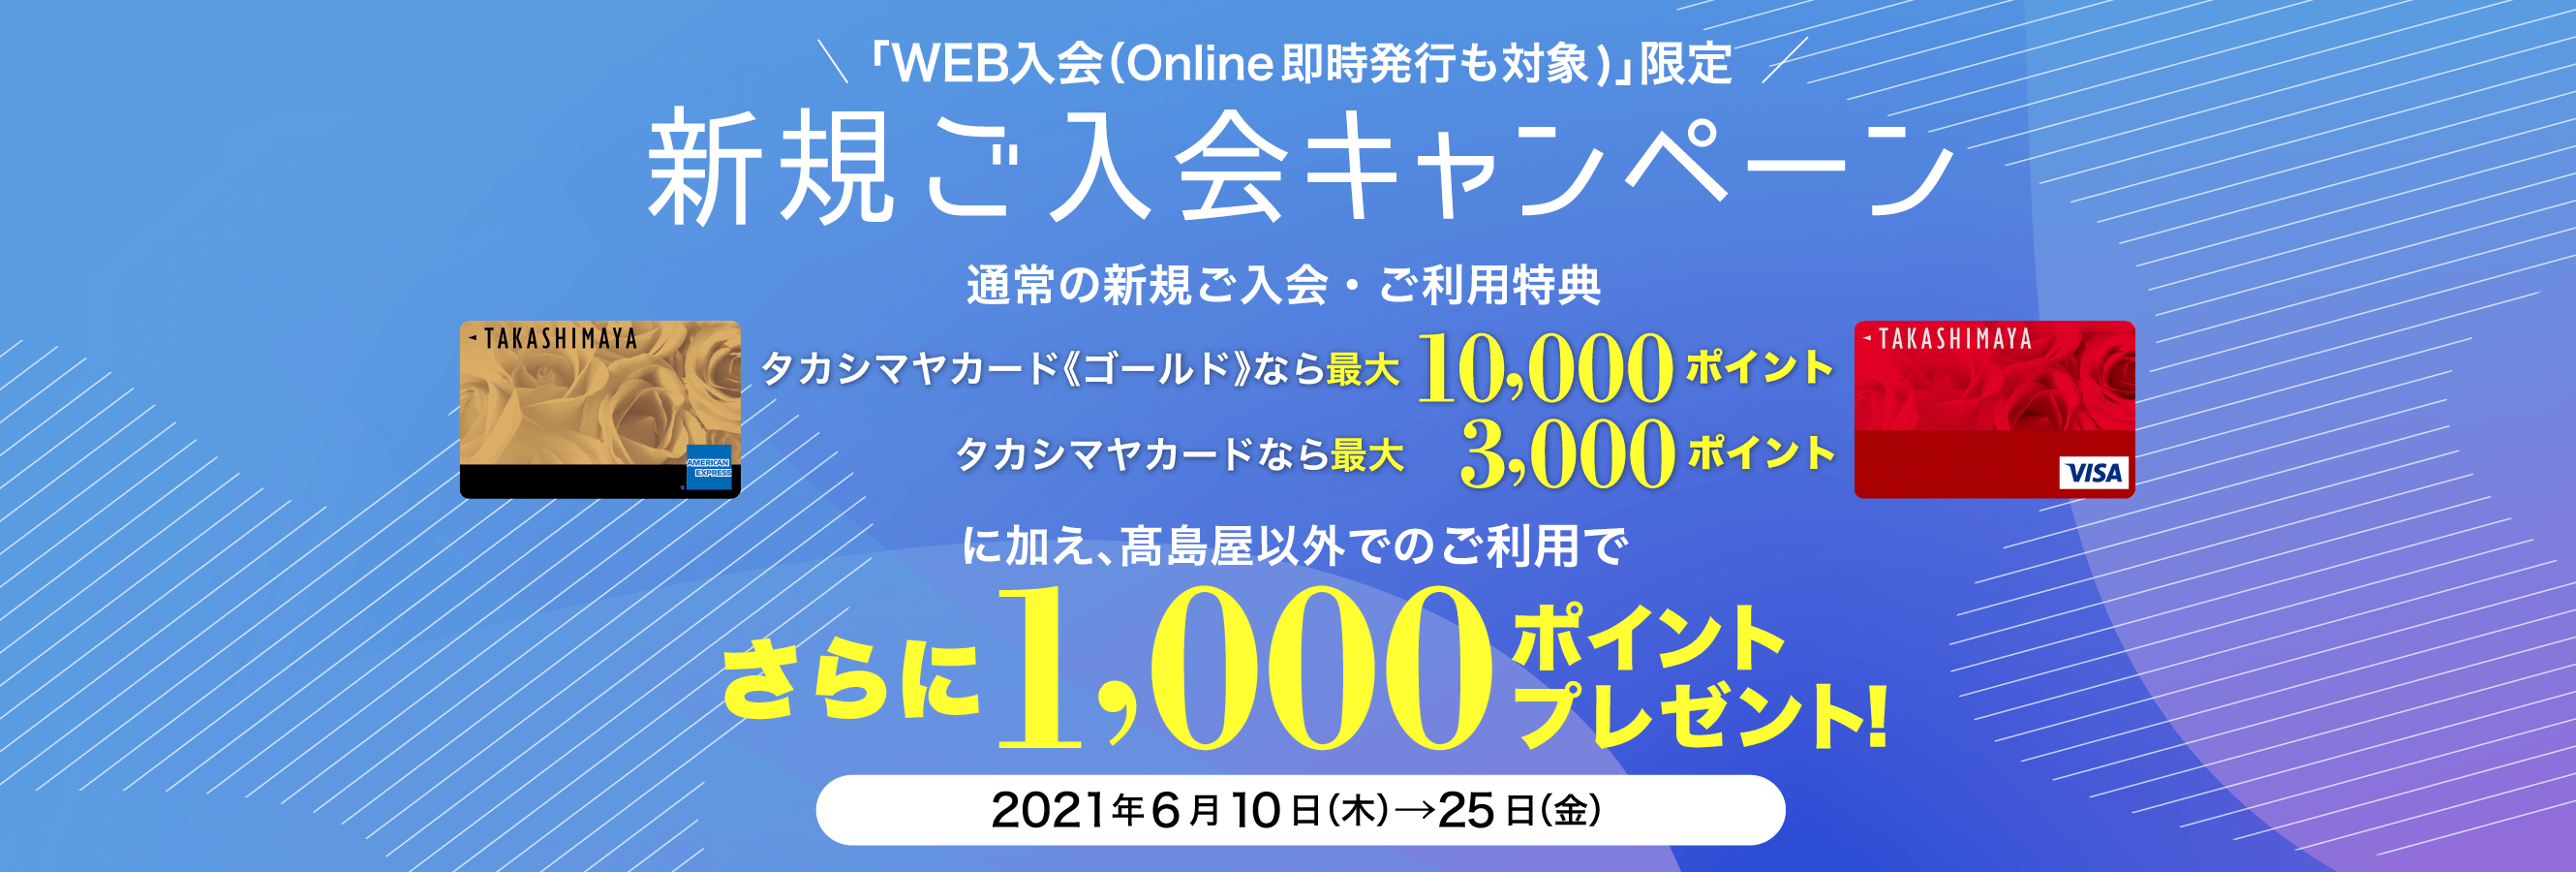 「WEB入会（Online即時発行も対象)」限定 新規ご入会キャンペーン タカシマヤカード《ゴールド》なら最大10,000ポイント タカシマヤカードなら最大 3,000ポイント に加え、髙島屋以外でのご利用でさらに1,000ポイントプレゼント！ 2021年6月10日（木）→25日（金）